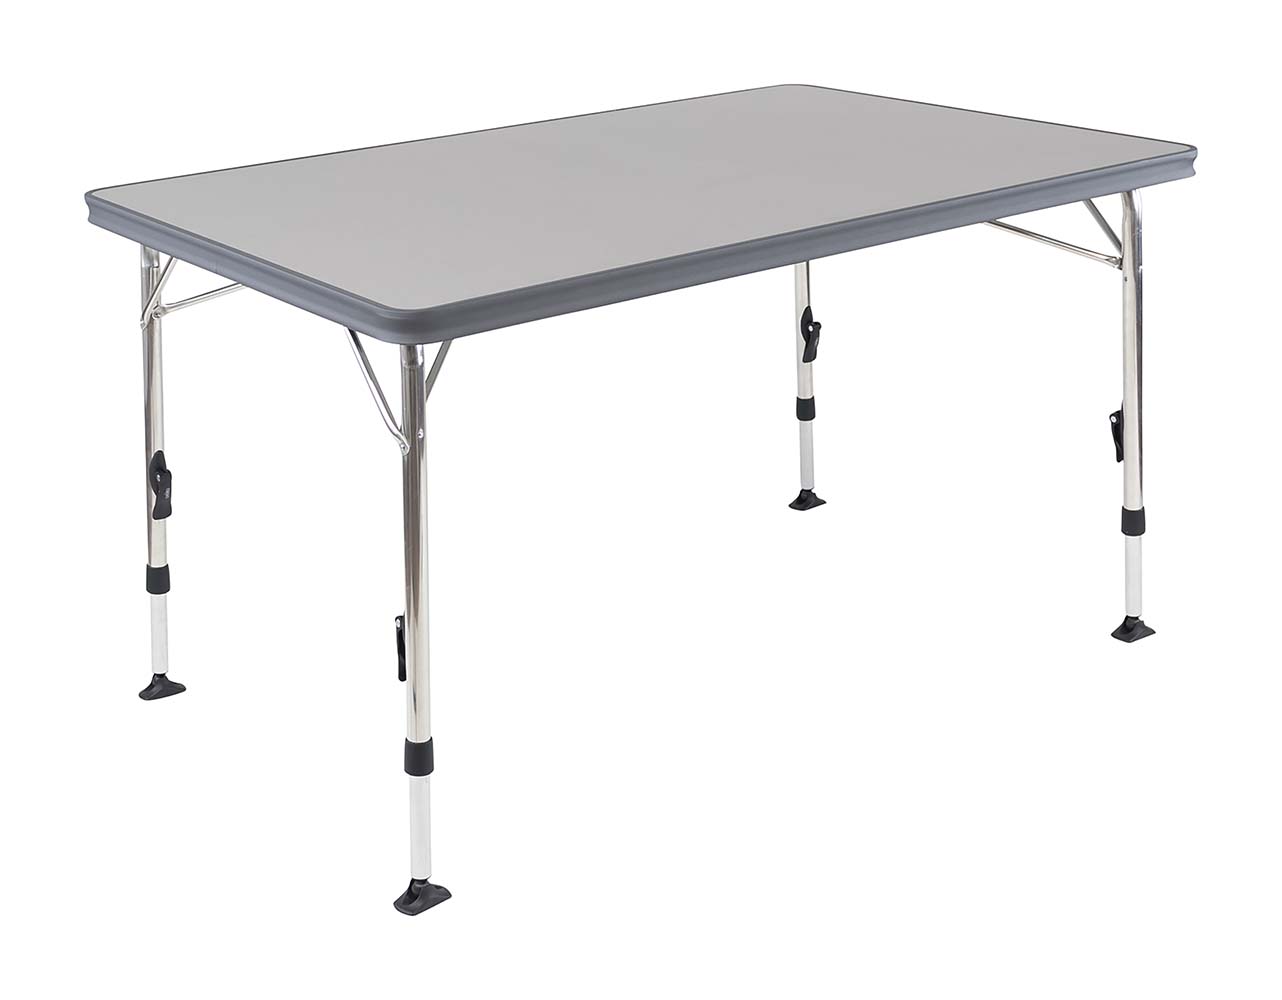 1151385 Een luxe en stijlvolle tafel. Deze lichtgewicht campingtafel is voorzien van een hittebestendig en watervast tafelblad. De tafel beschikt over traploos verstelbare poten (59-74 cm) die zijn in te klappen, hierdoor is deze tafel eenvoudig en compact te vervoeren. Doordat deze tafel beschikt over stabilisatie voeten, staat hij stabiel op elke ondergrond.